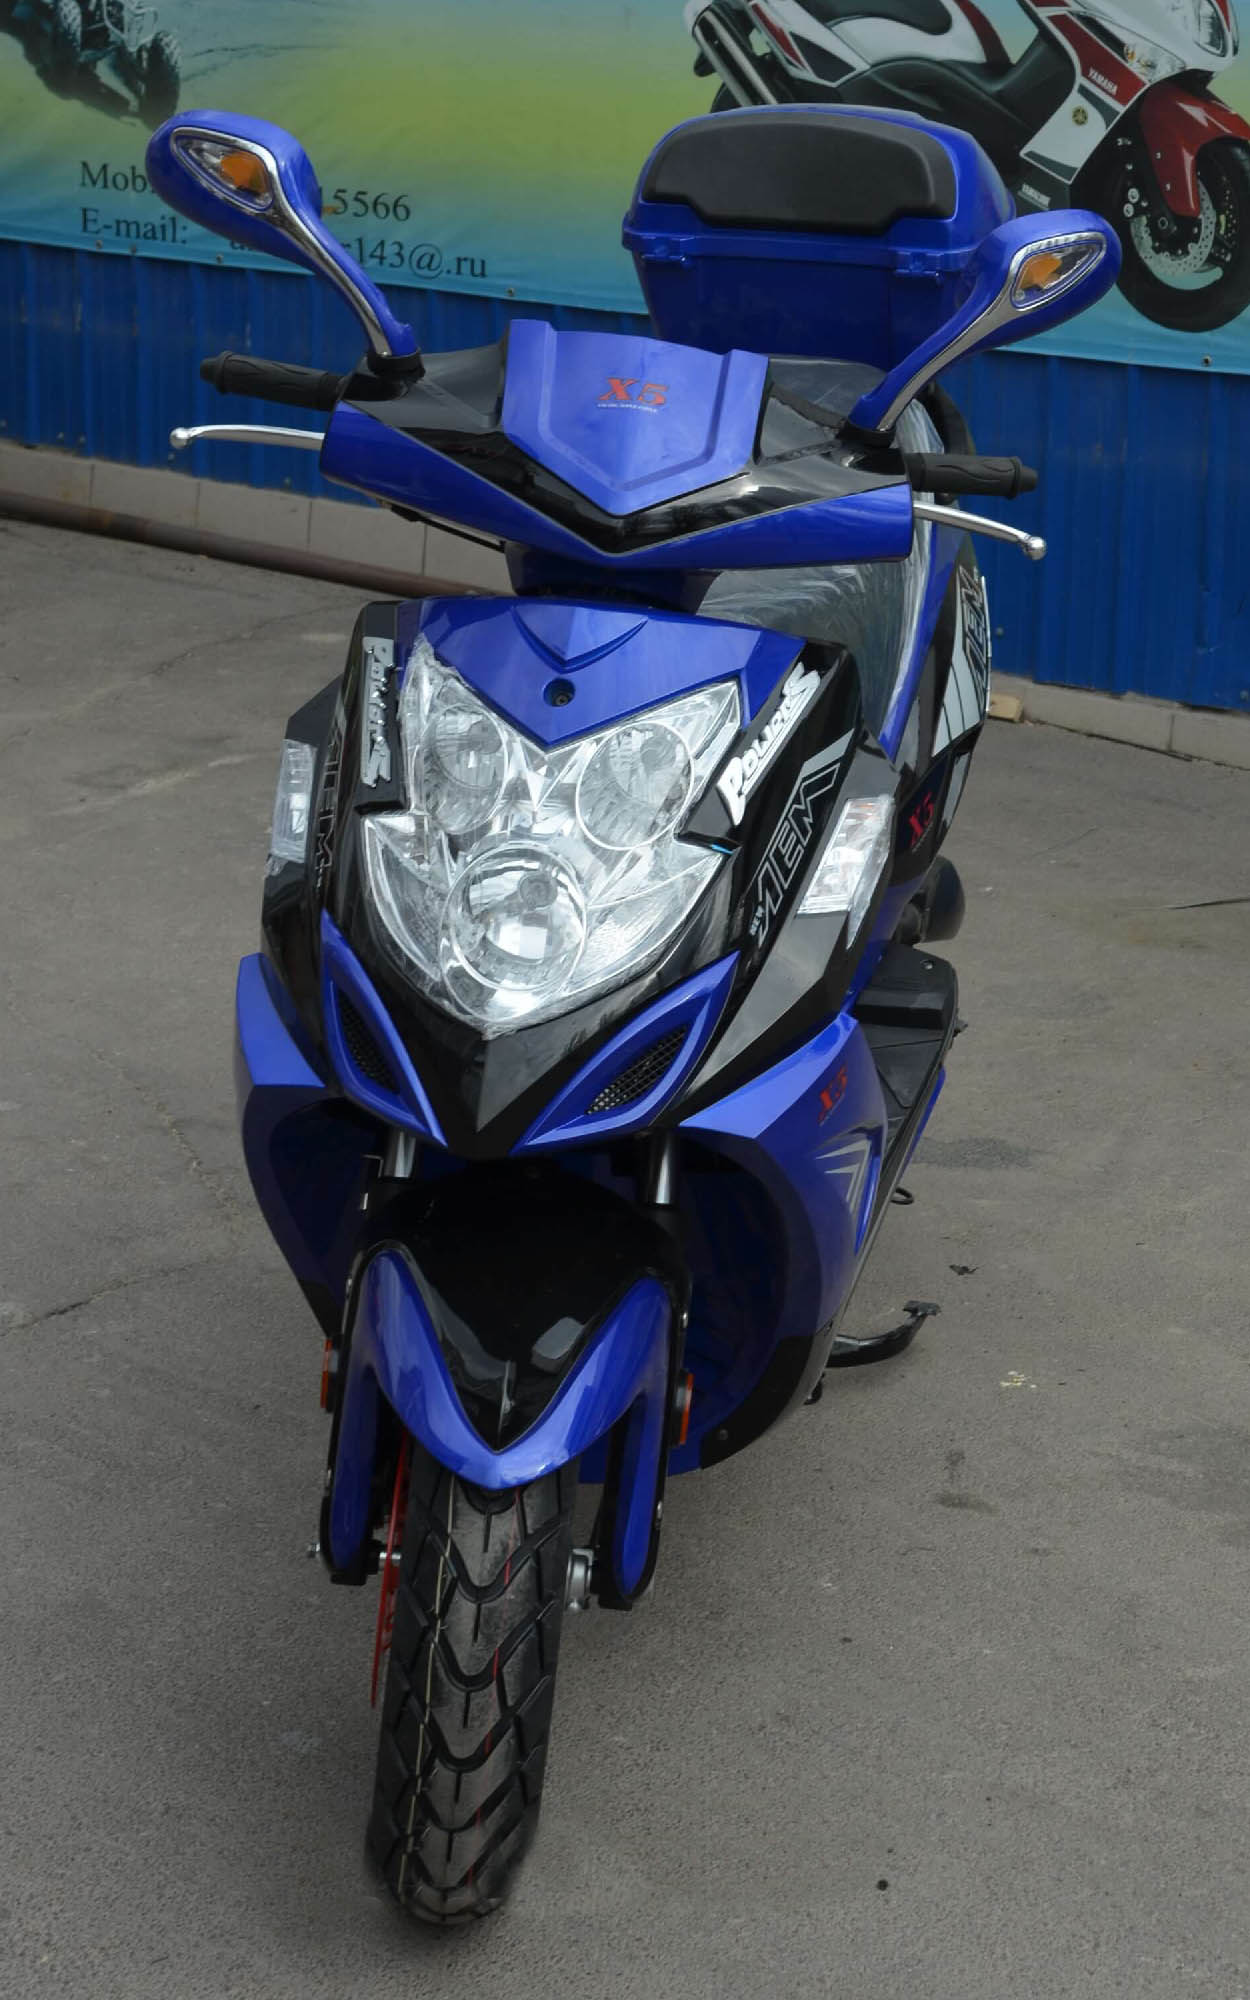 Скутер VS50QT-3 X5 цвет синий вид спереди купить по низкой цене